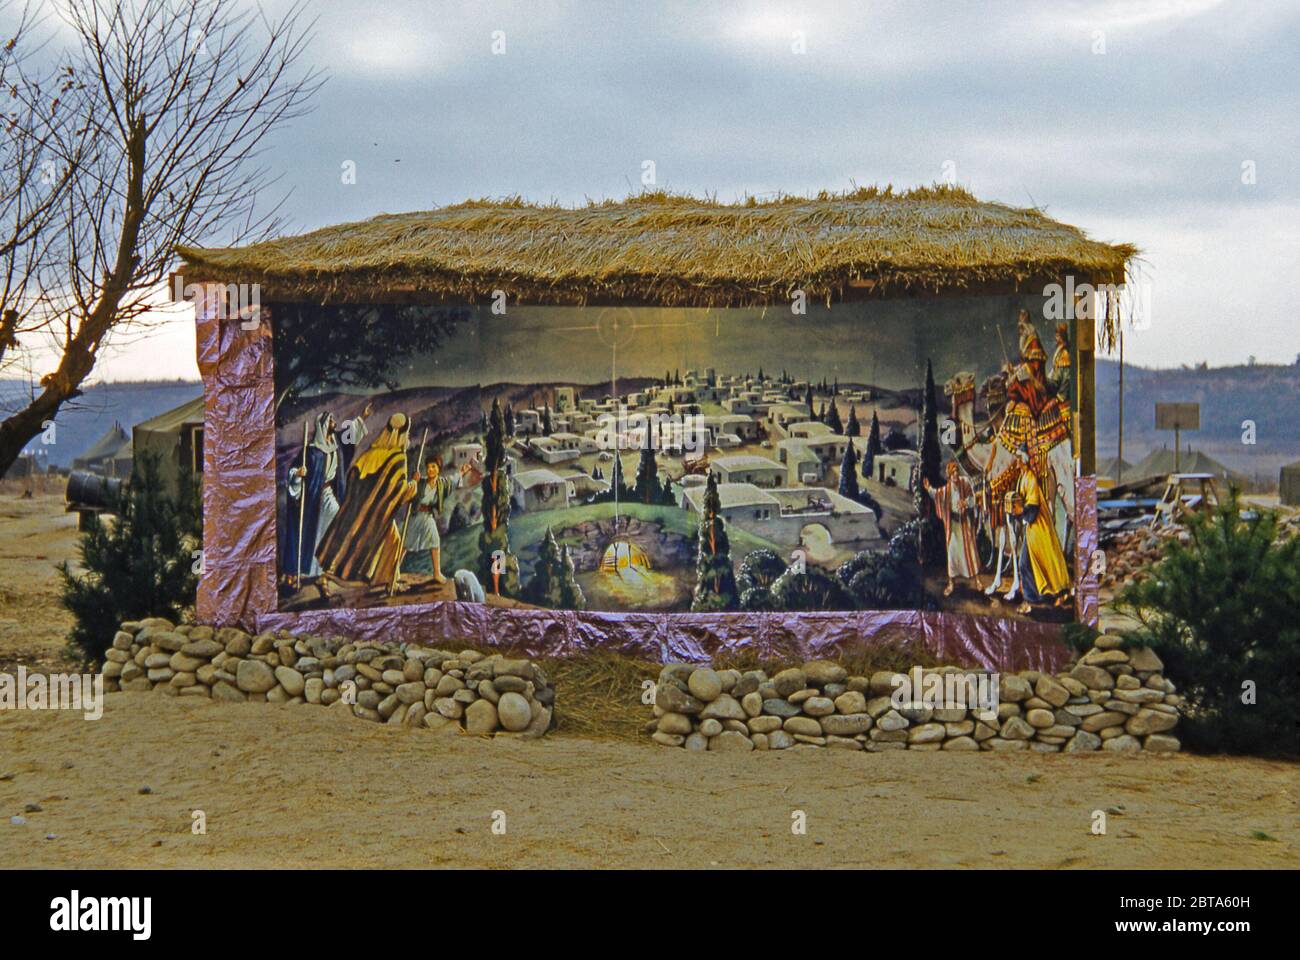 Ein Gebäude, in dem eine Krippe auf einer Basis für die 40. Infanterie der US-Armee, Division Replacement Company während des Koreakriegs, Südkorea, 1953, untergebracht ist. Das eindrucksvoll bemalte Wandbild von Bethlehem zeigt Hirten und die drei Weisen. Es ist beleuchtet und vor den Elementen mit einem Strohdach geschützt. Stockfoto